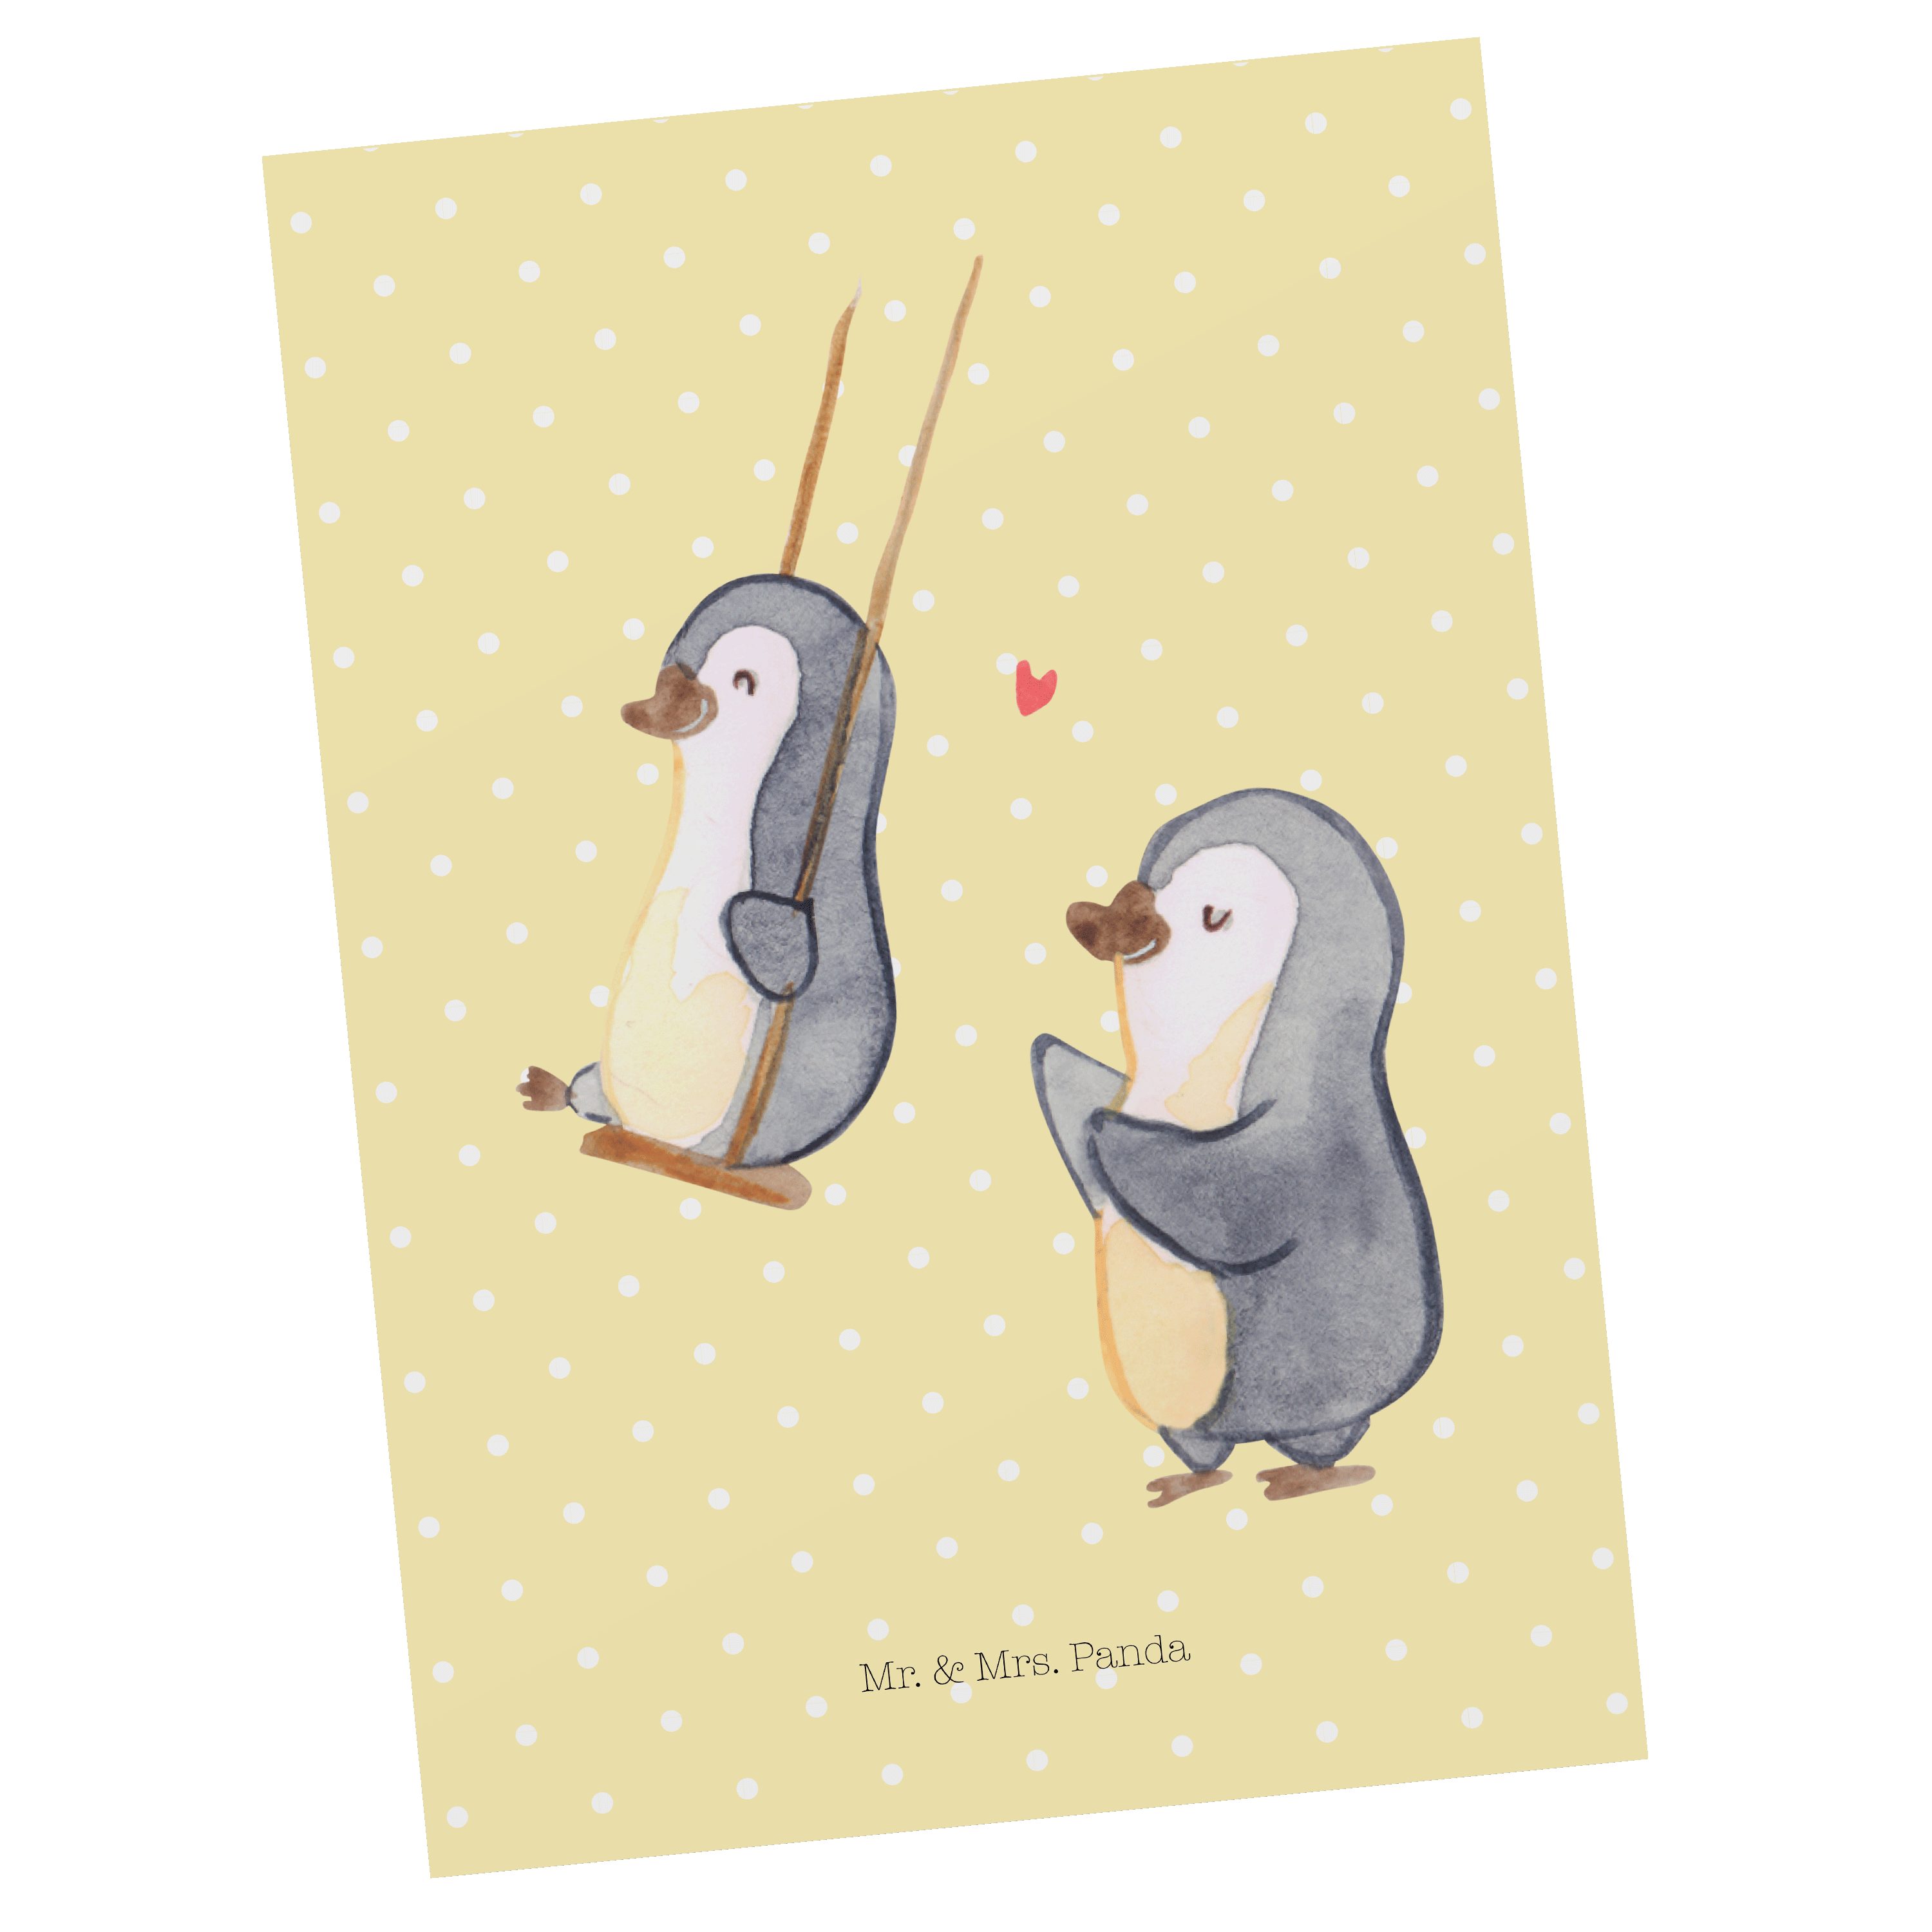 Mrs. - Mr. Pastell Geschenk, & Postkarte Geburtstagskarte, Gelb - Gr schaukeln Pinguin Panda Oma